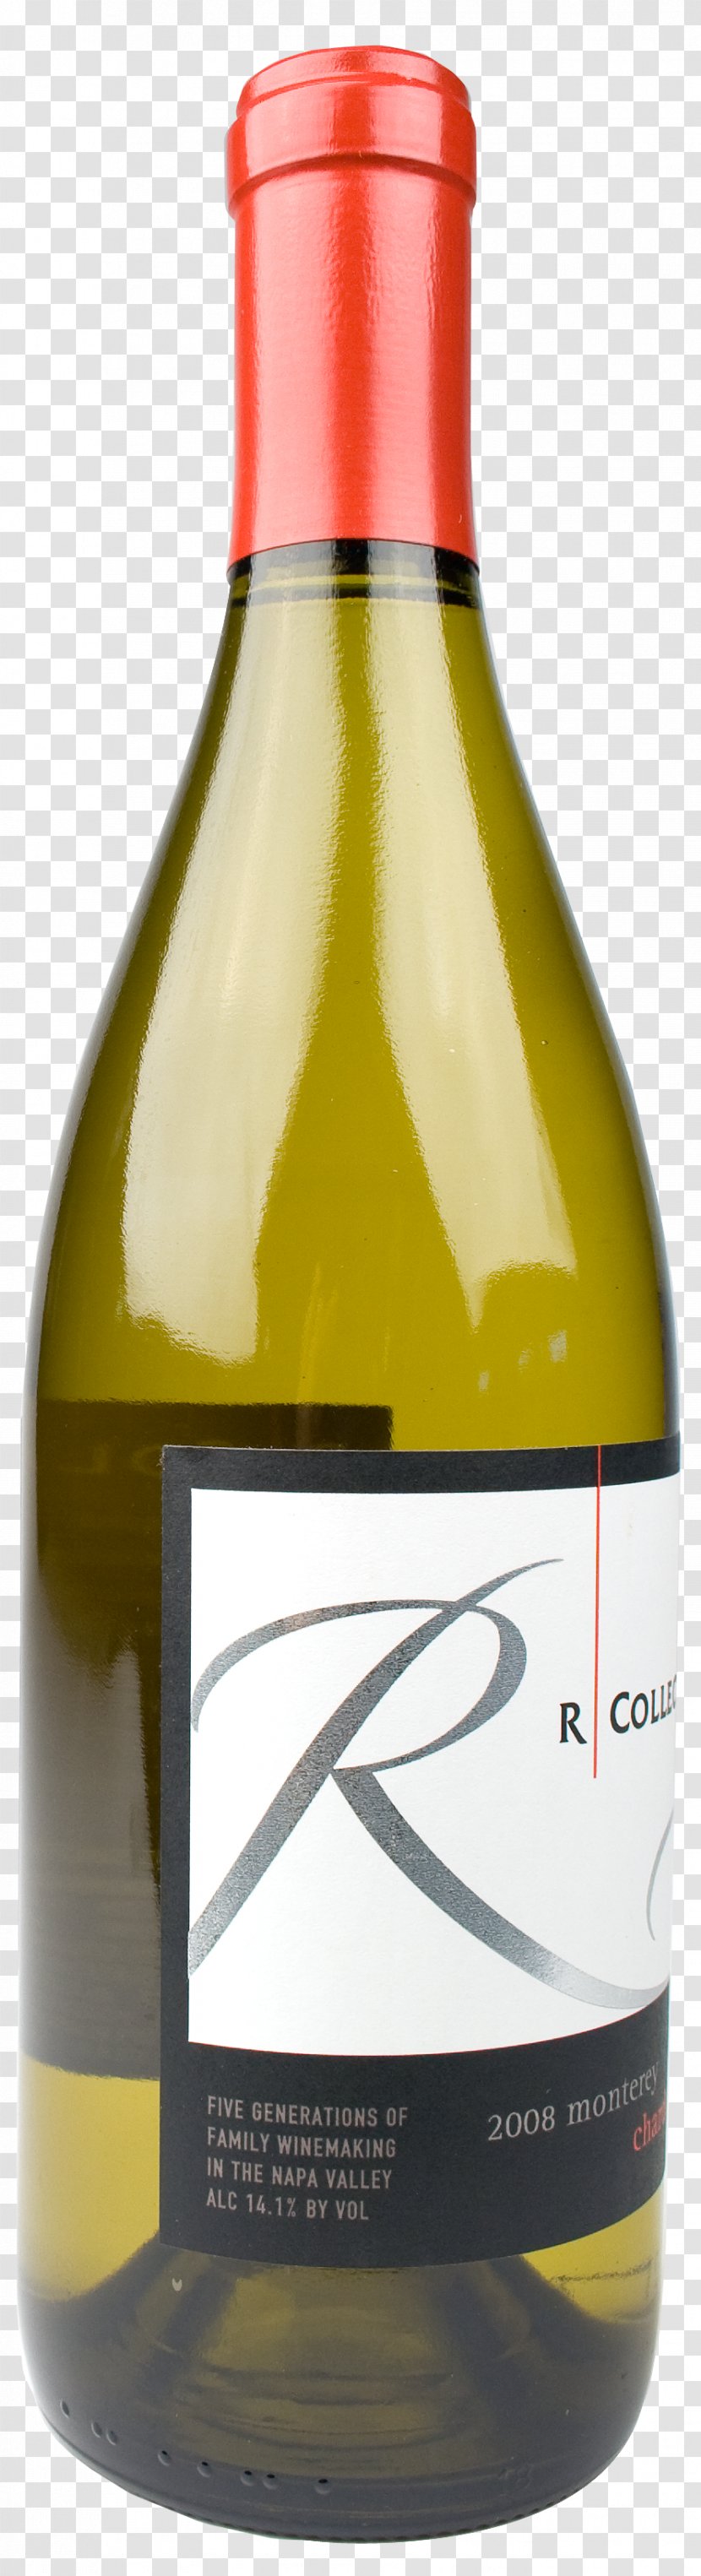 Liqueur White Wine Glass Bottle Transparent PNG